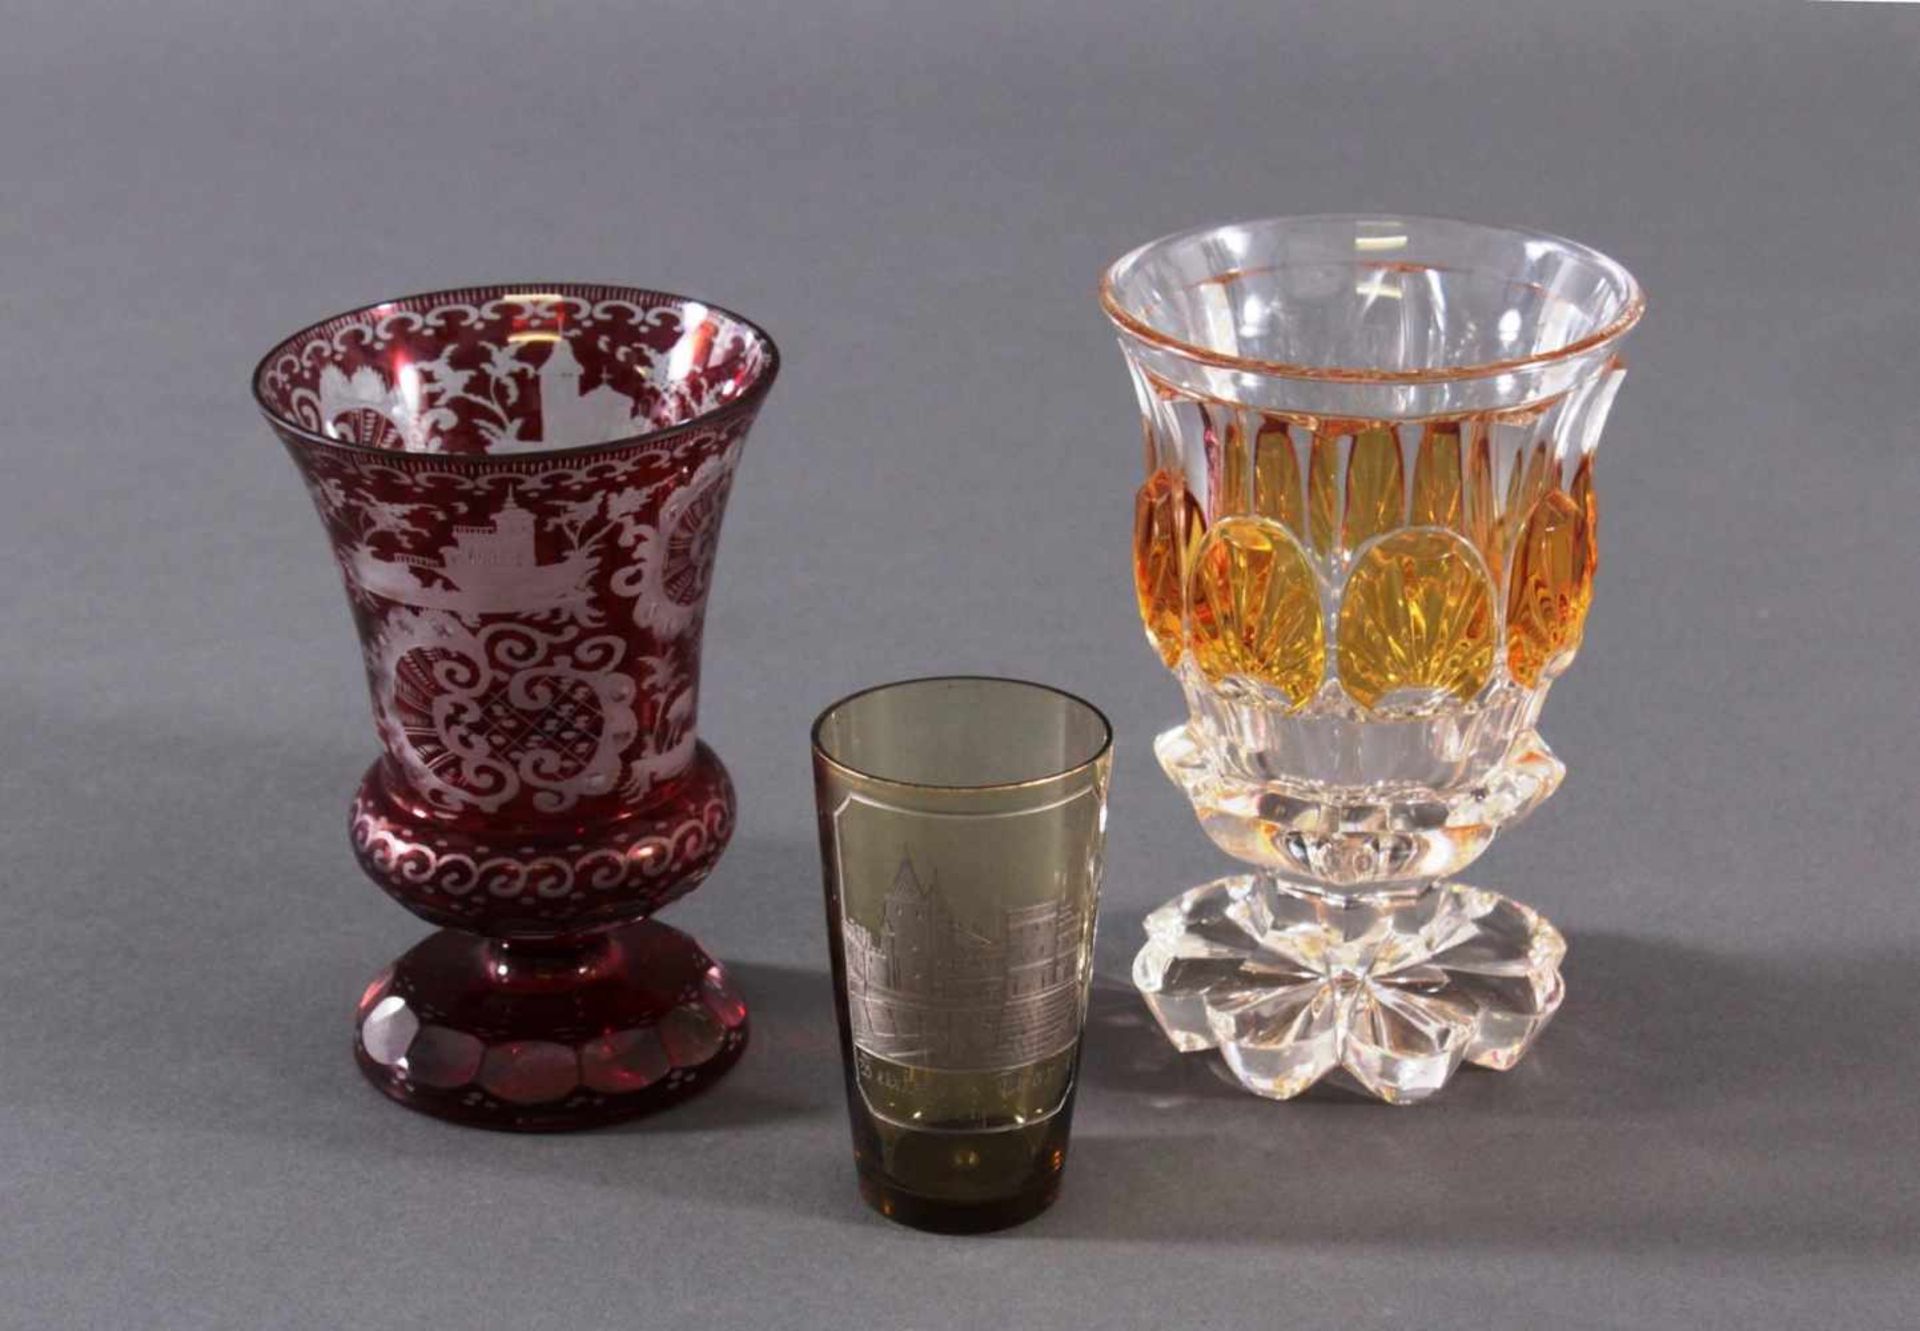 2 Pokalgläser und 1 Andenkenglas um 1900Klarglas mit partieller Farbeinschmelzung, mundgeblasen - Image 2 of 6